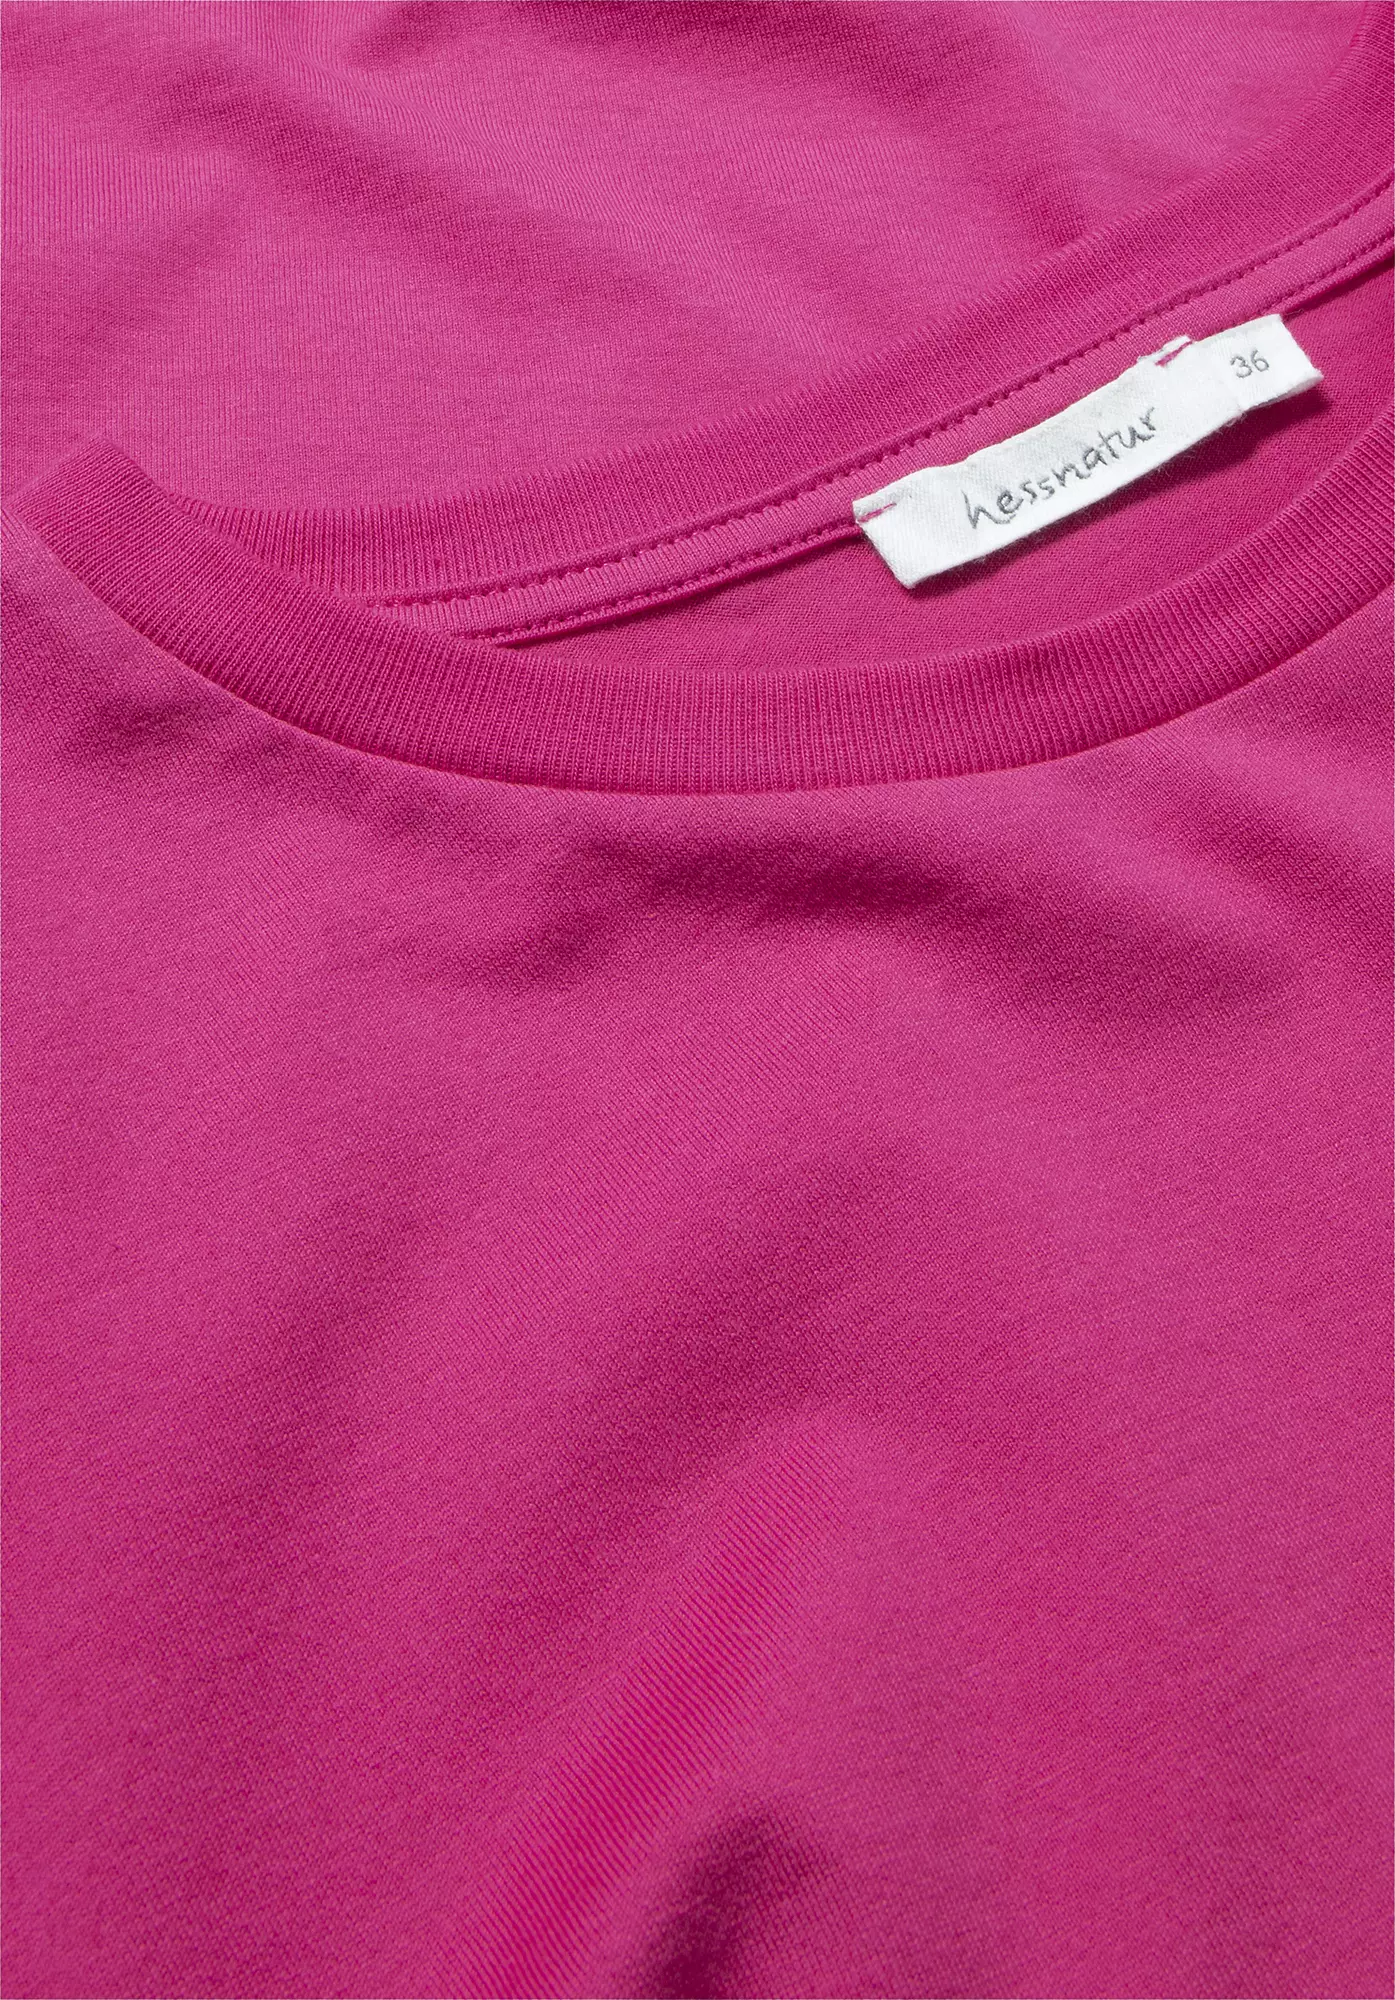 Langarm-Shirt aus reiner Bio-Baumwolle 5396554